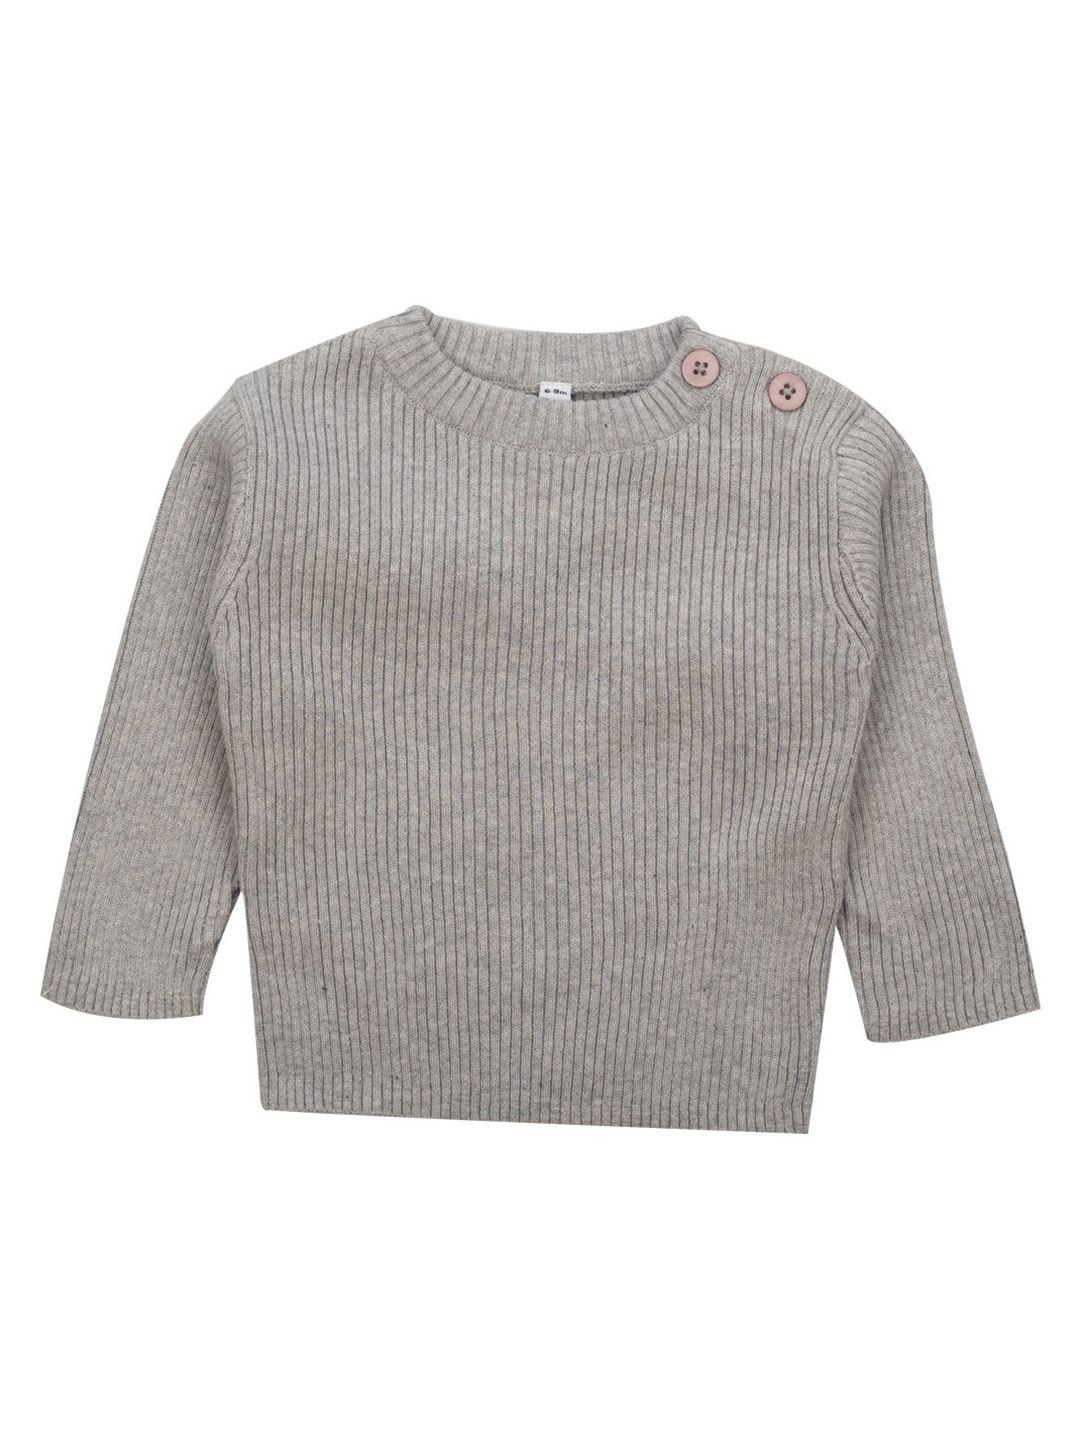 meemee-unisex-kids-grey-wool-pullover